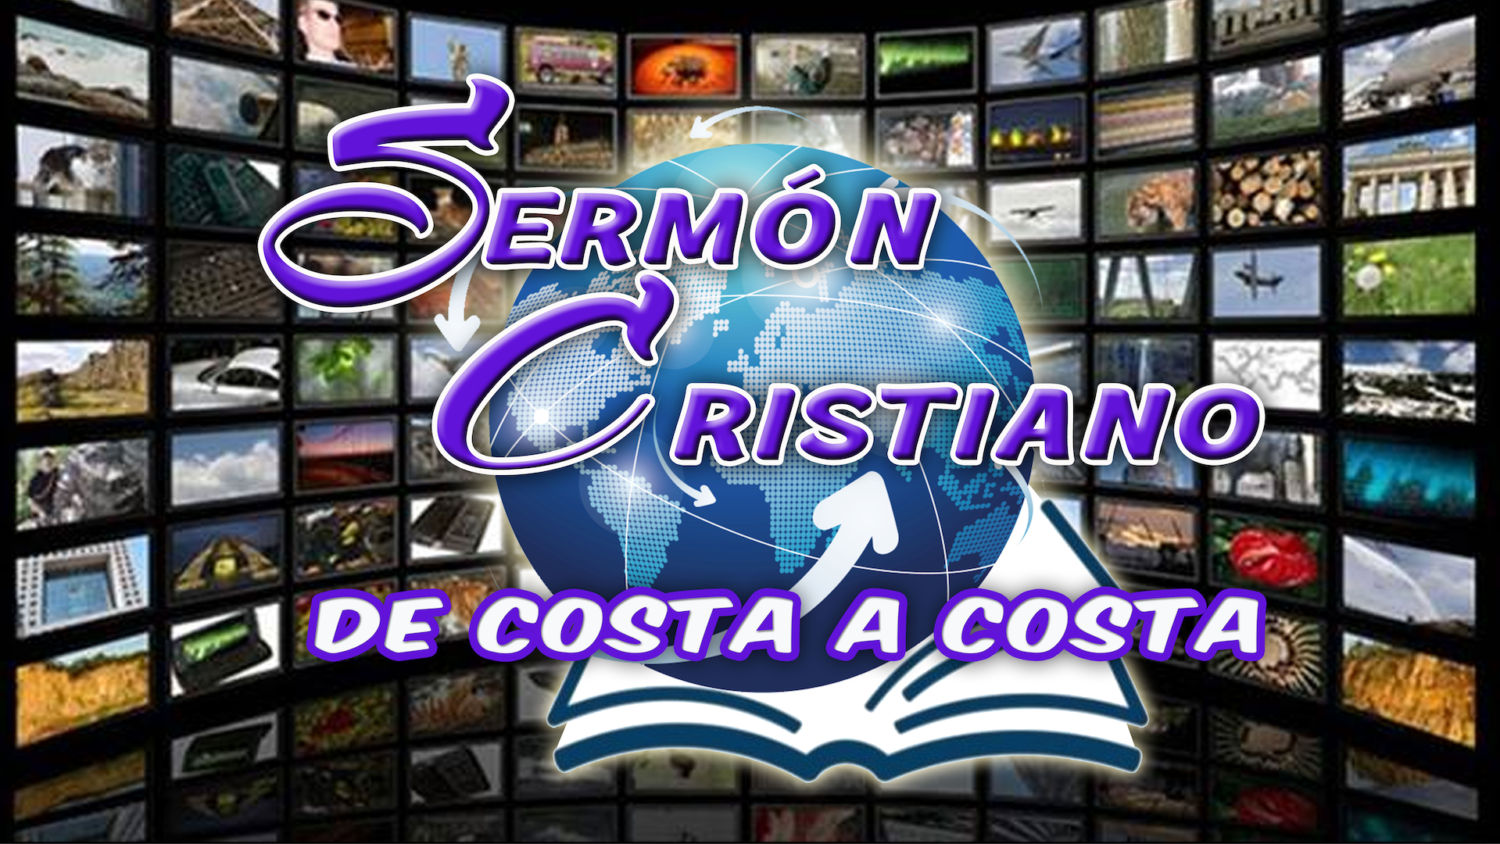 Logo Sermon Cristiano1920 x 1080